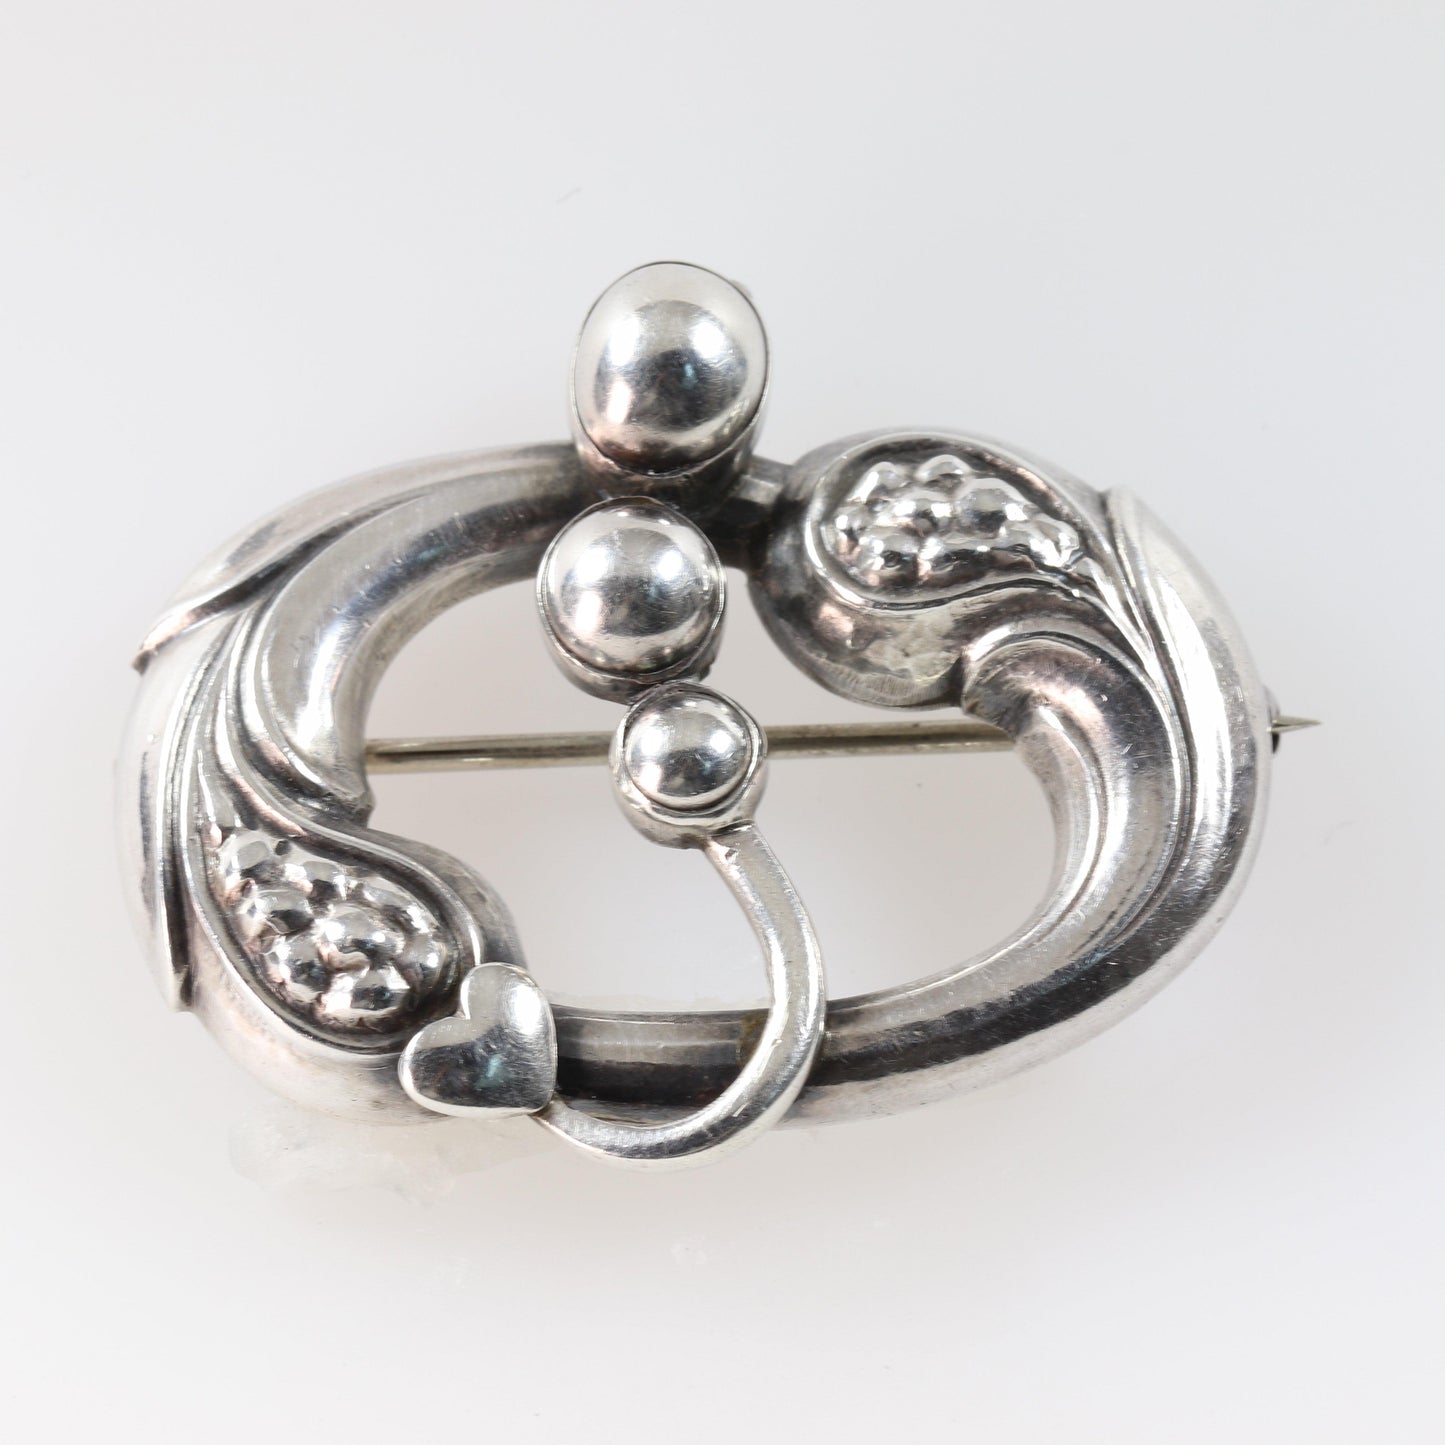 Vintage Georg Jensen Jewelry | Heart and Cabochon Art Nouveau Brooch 77 - Carmel Fine Silver Jewelry